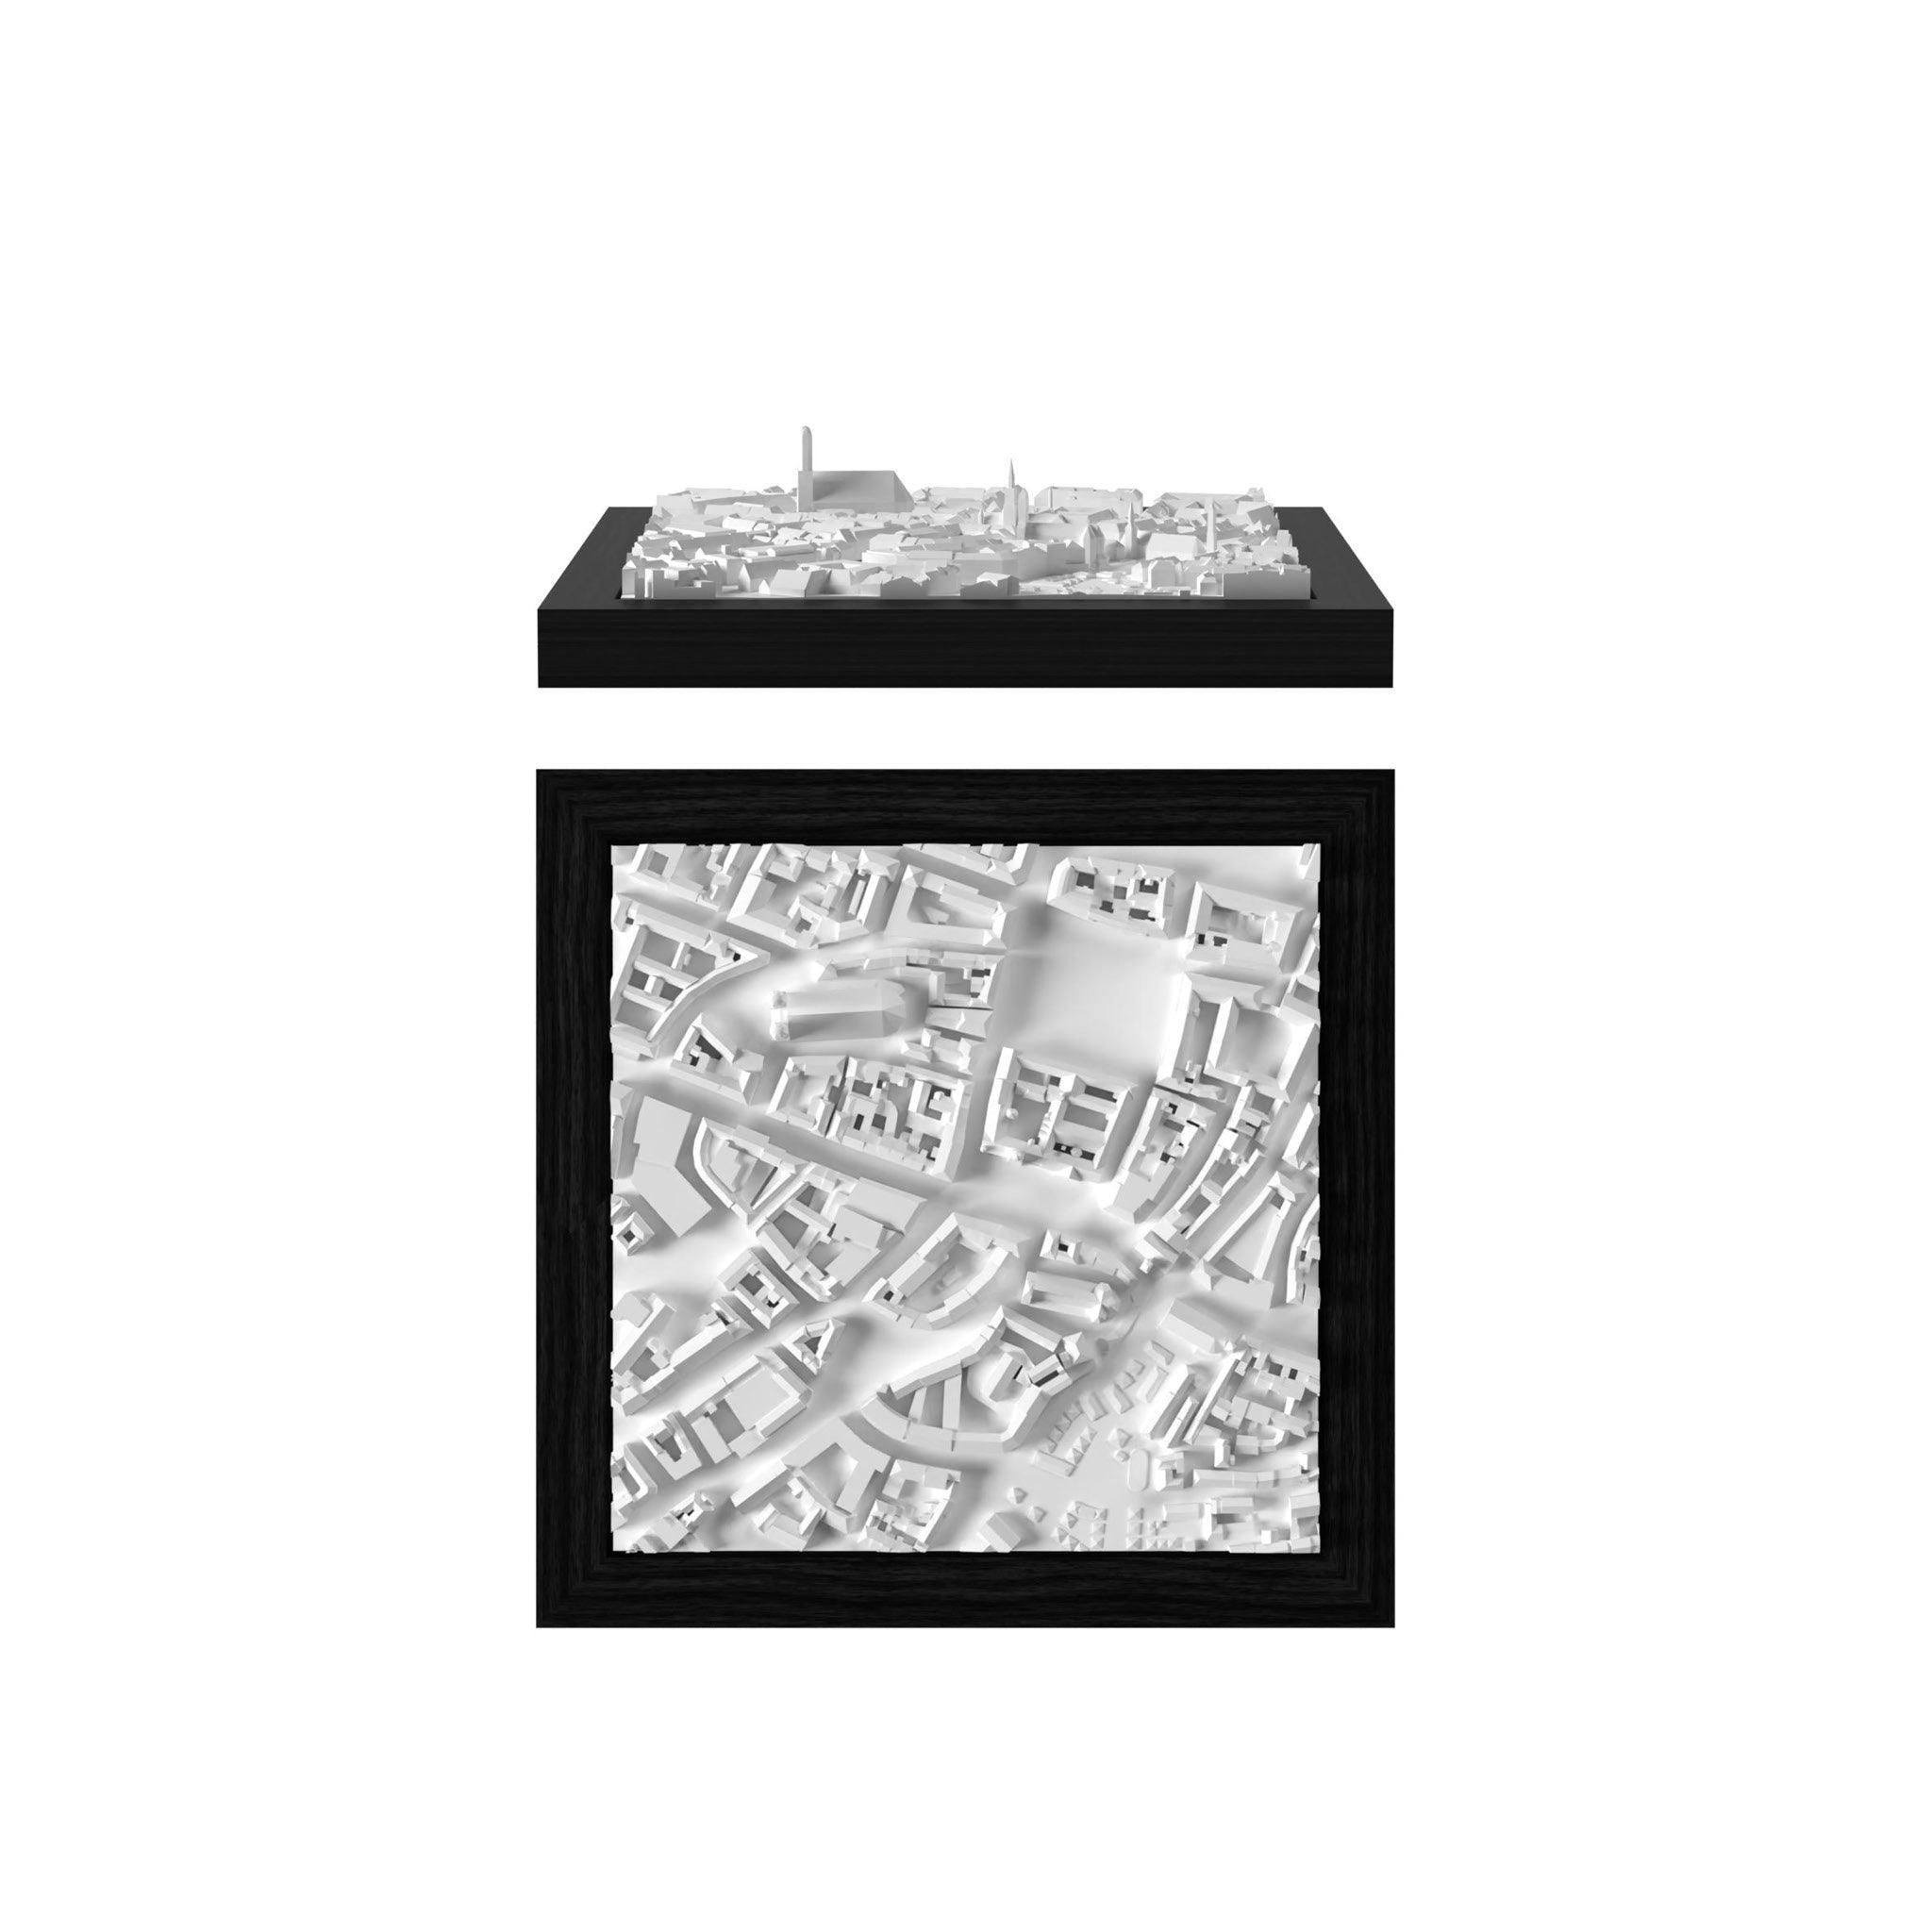 Munich 3D City Model Cube, Europe - CITYFRAMES